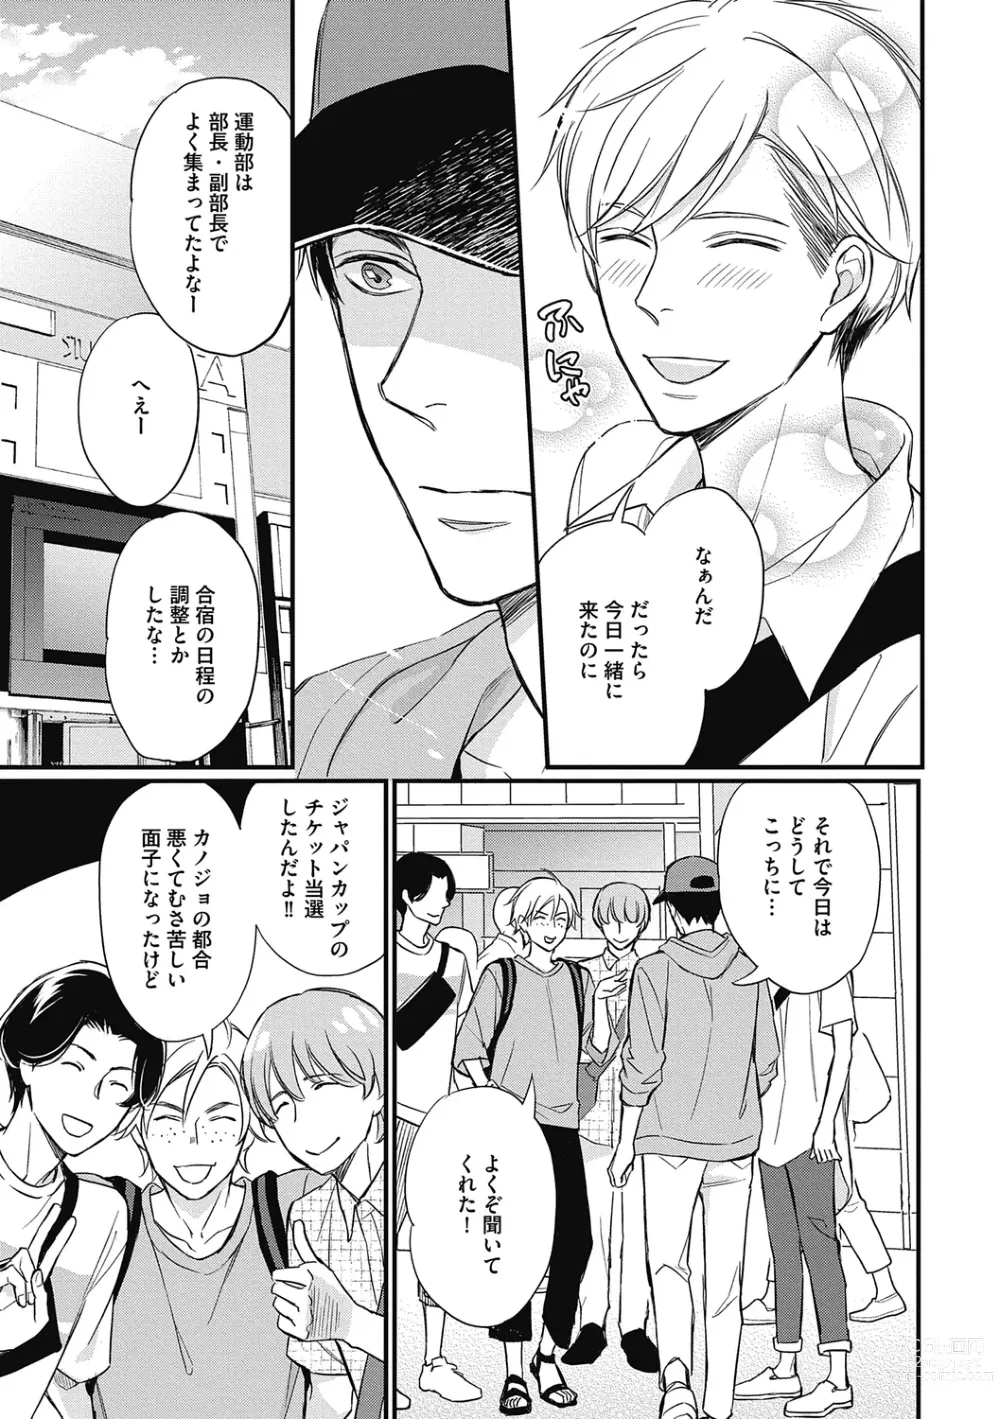 Page 185 of manga Saeki-kun wa Are ga Shitai